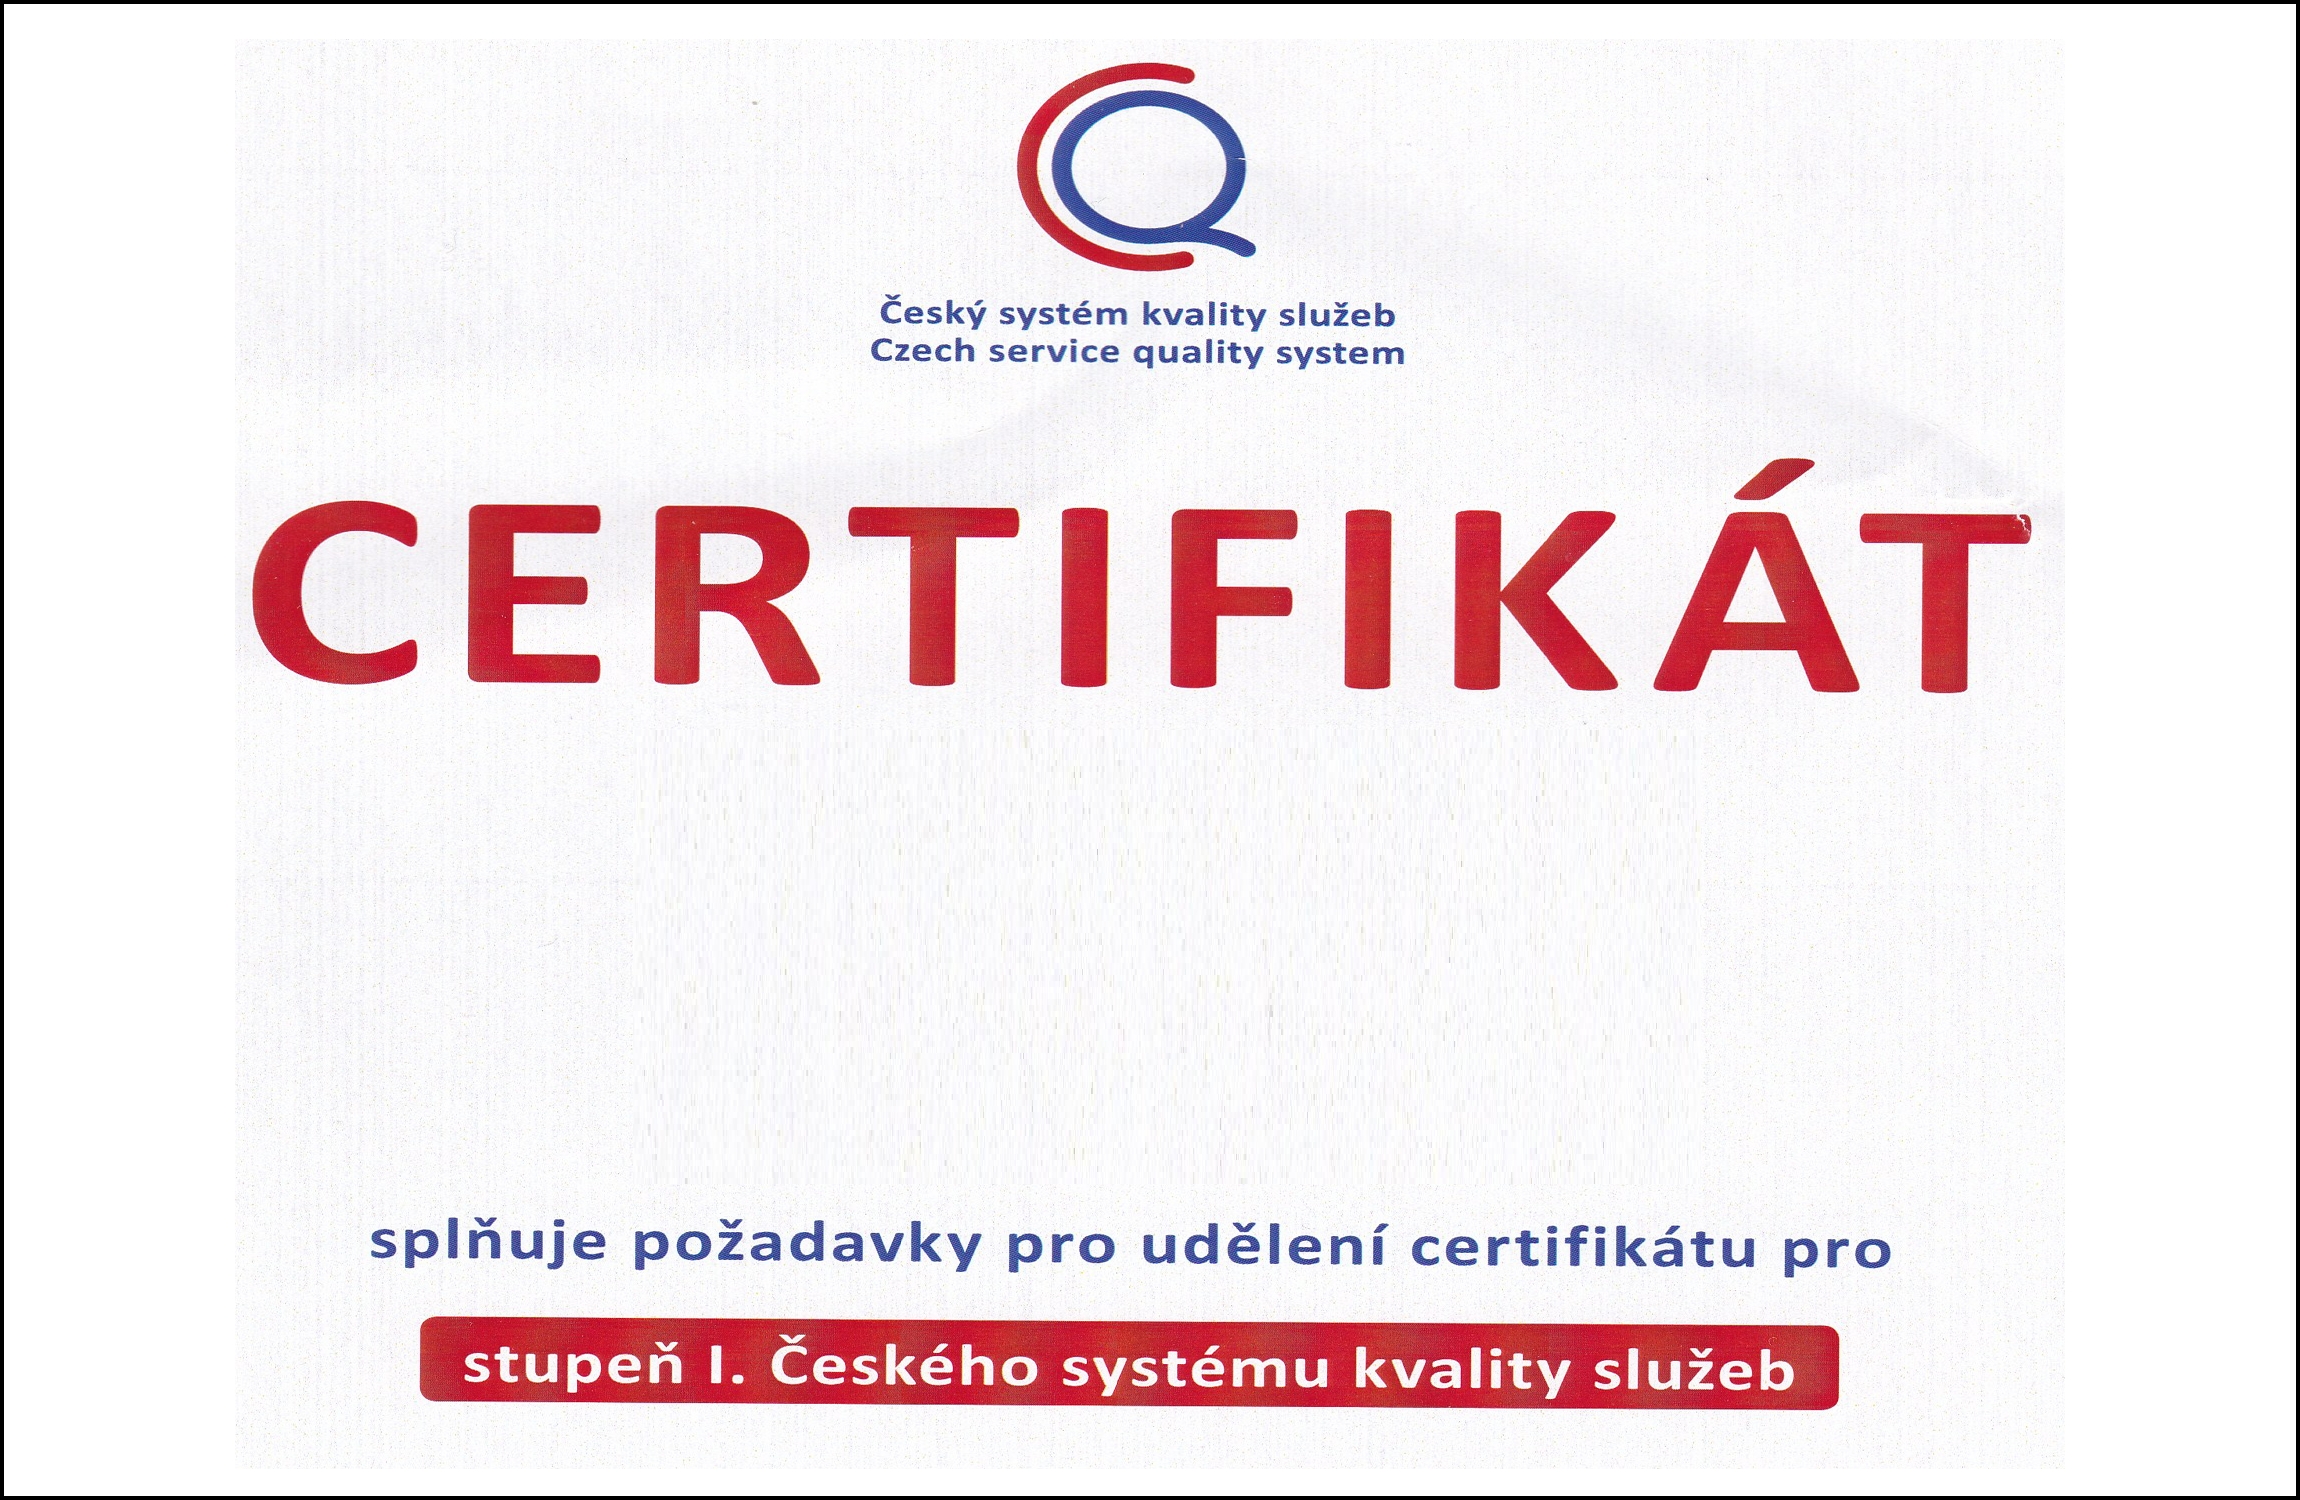 Certificat de gestion de voyage. dépêchez-vous - photo d'archive